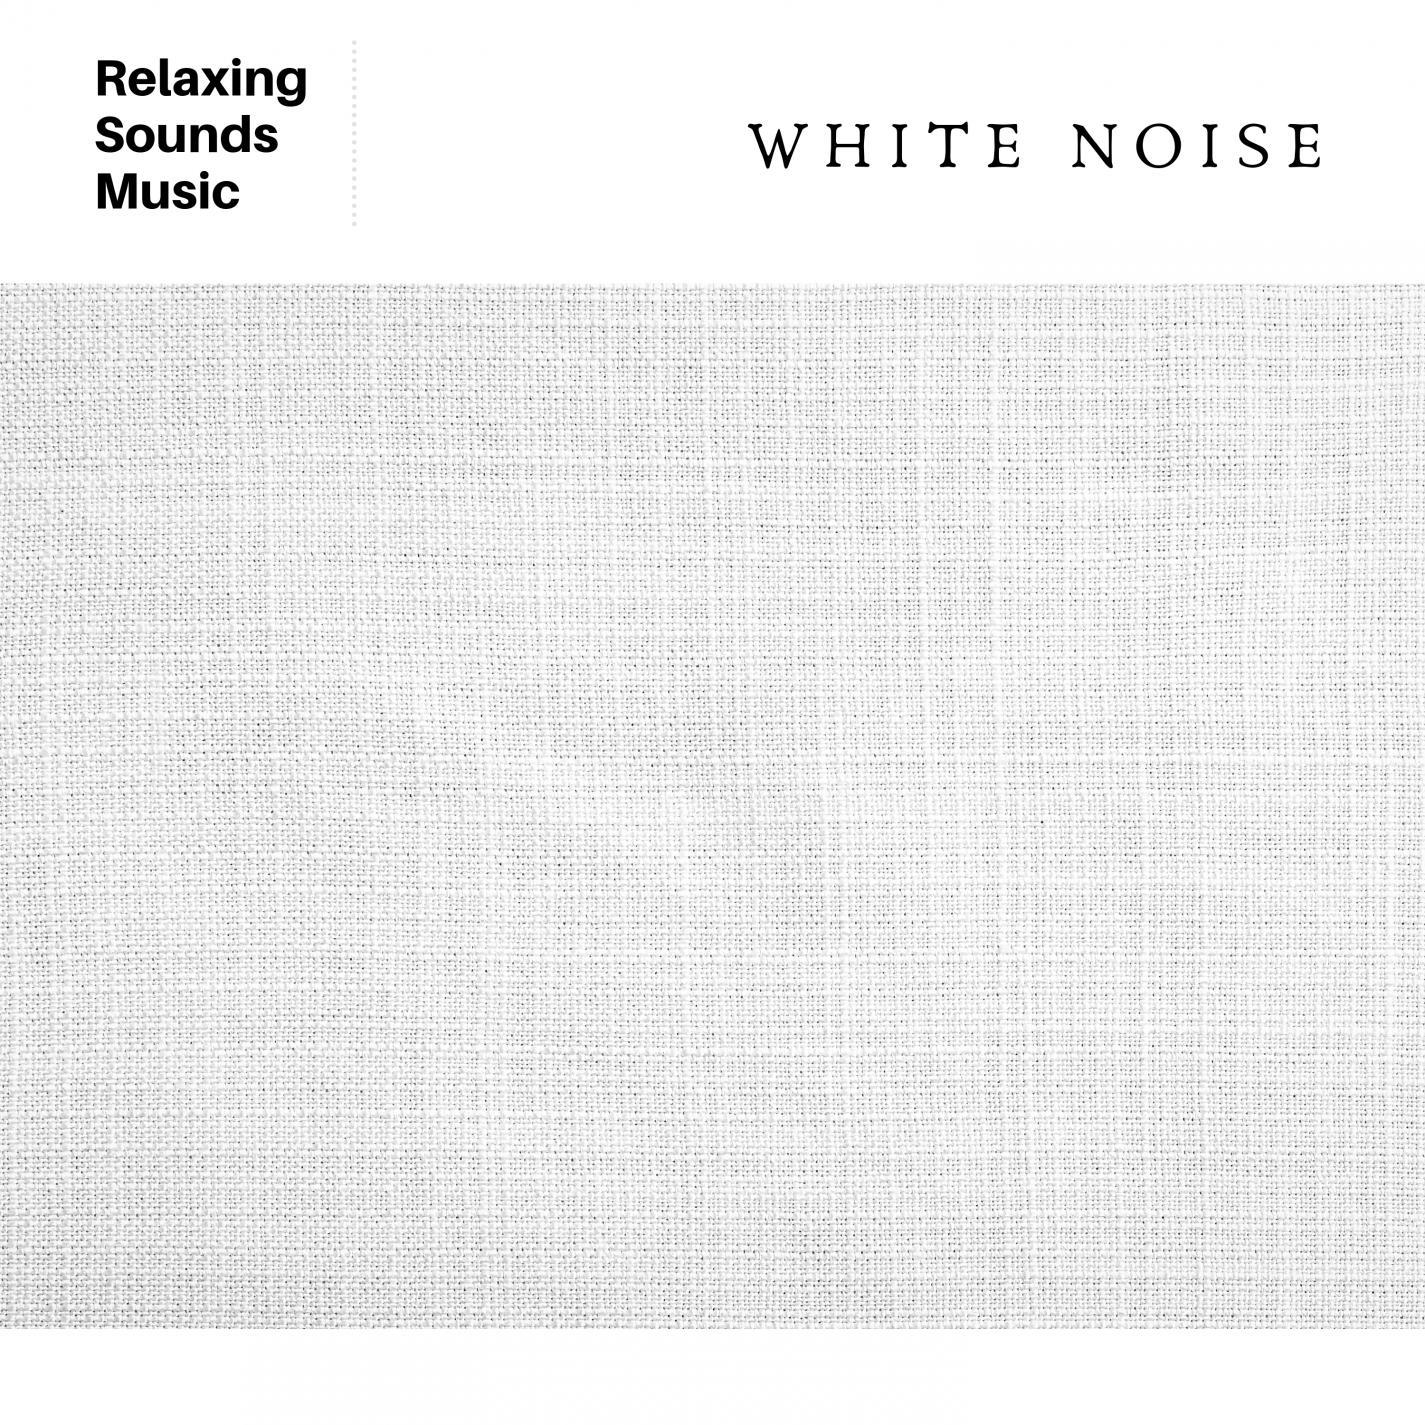 White Noise Reading